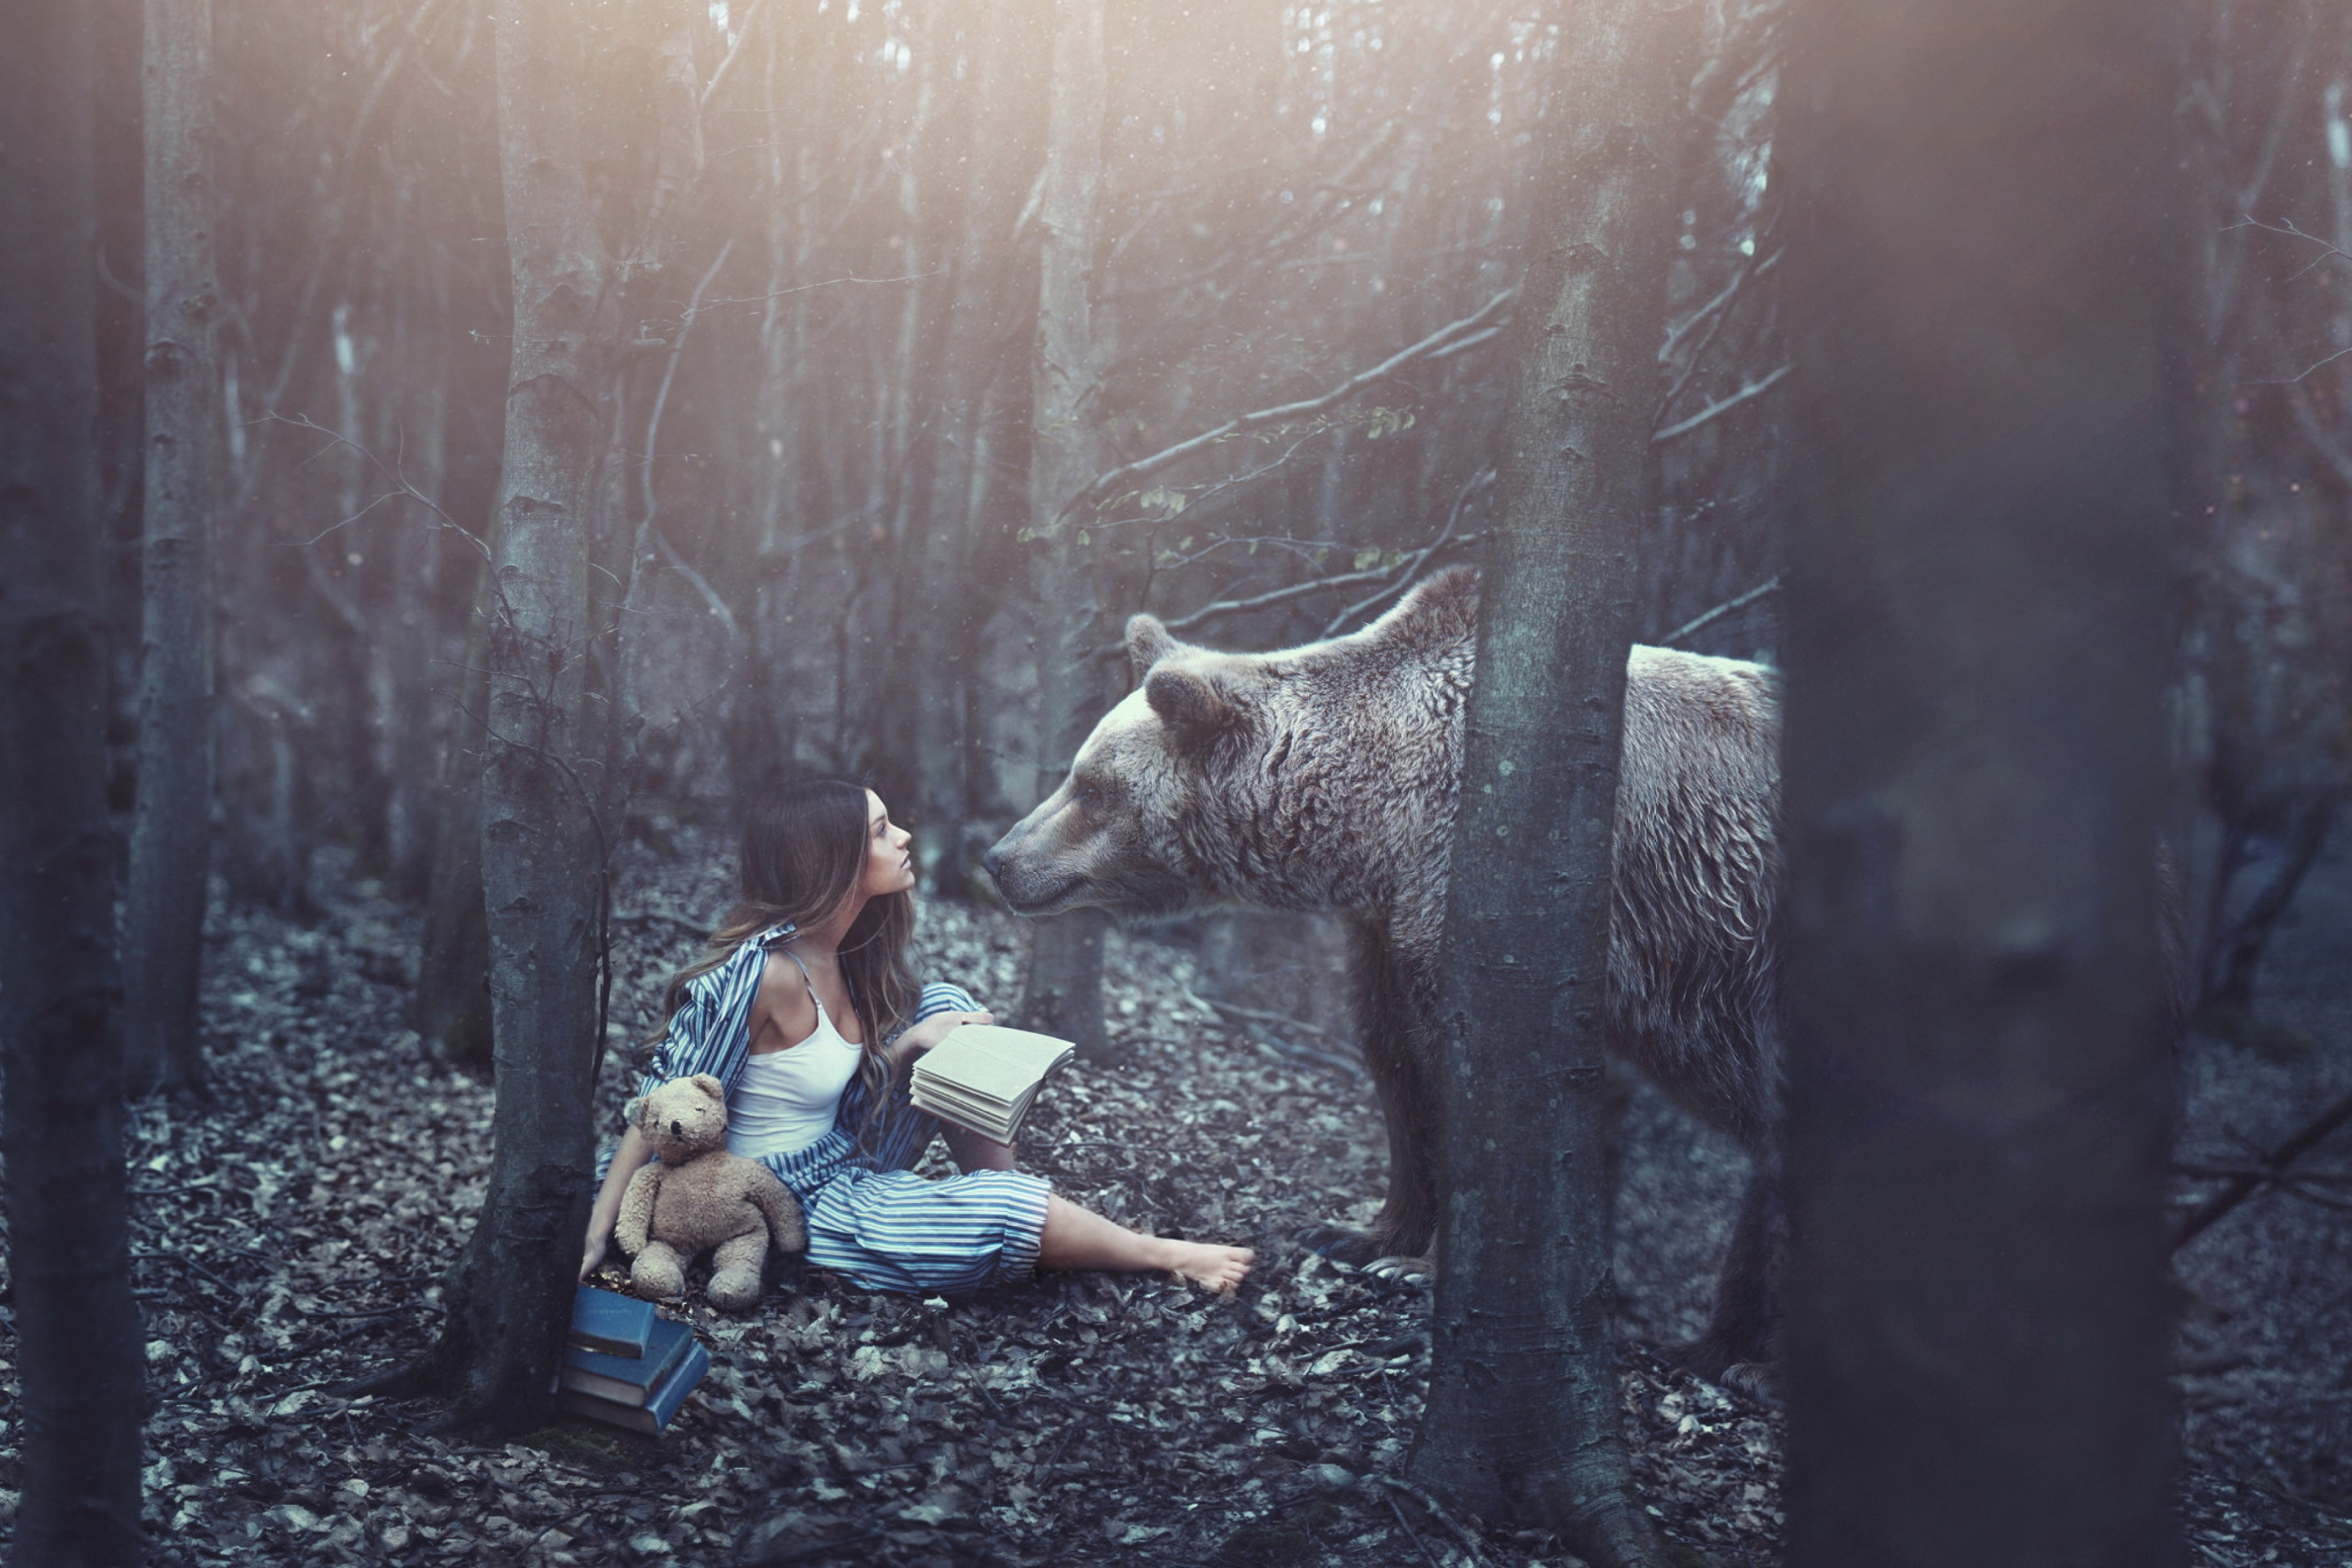 Включи девочку в лесу. Фотосессия в лесу. Медведь в лесу. Девушка и медведь. Девушка с медведем в лесу.